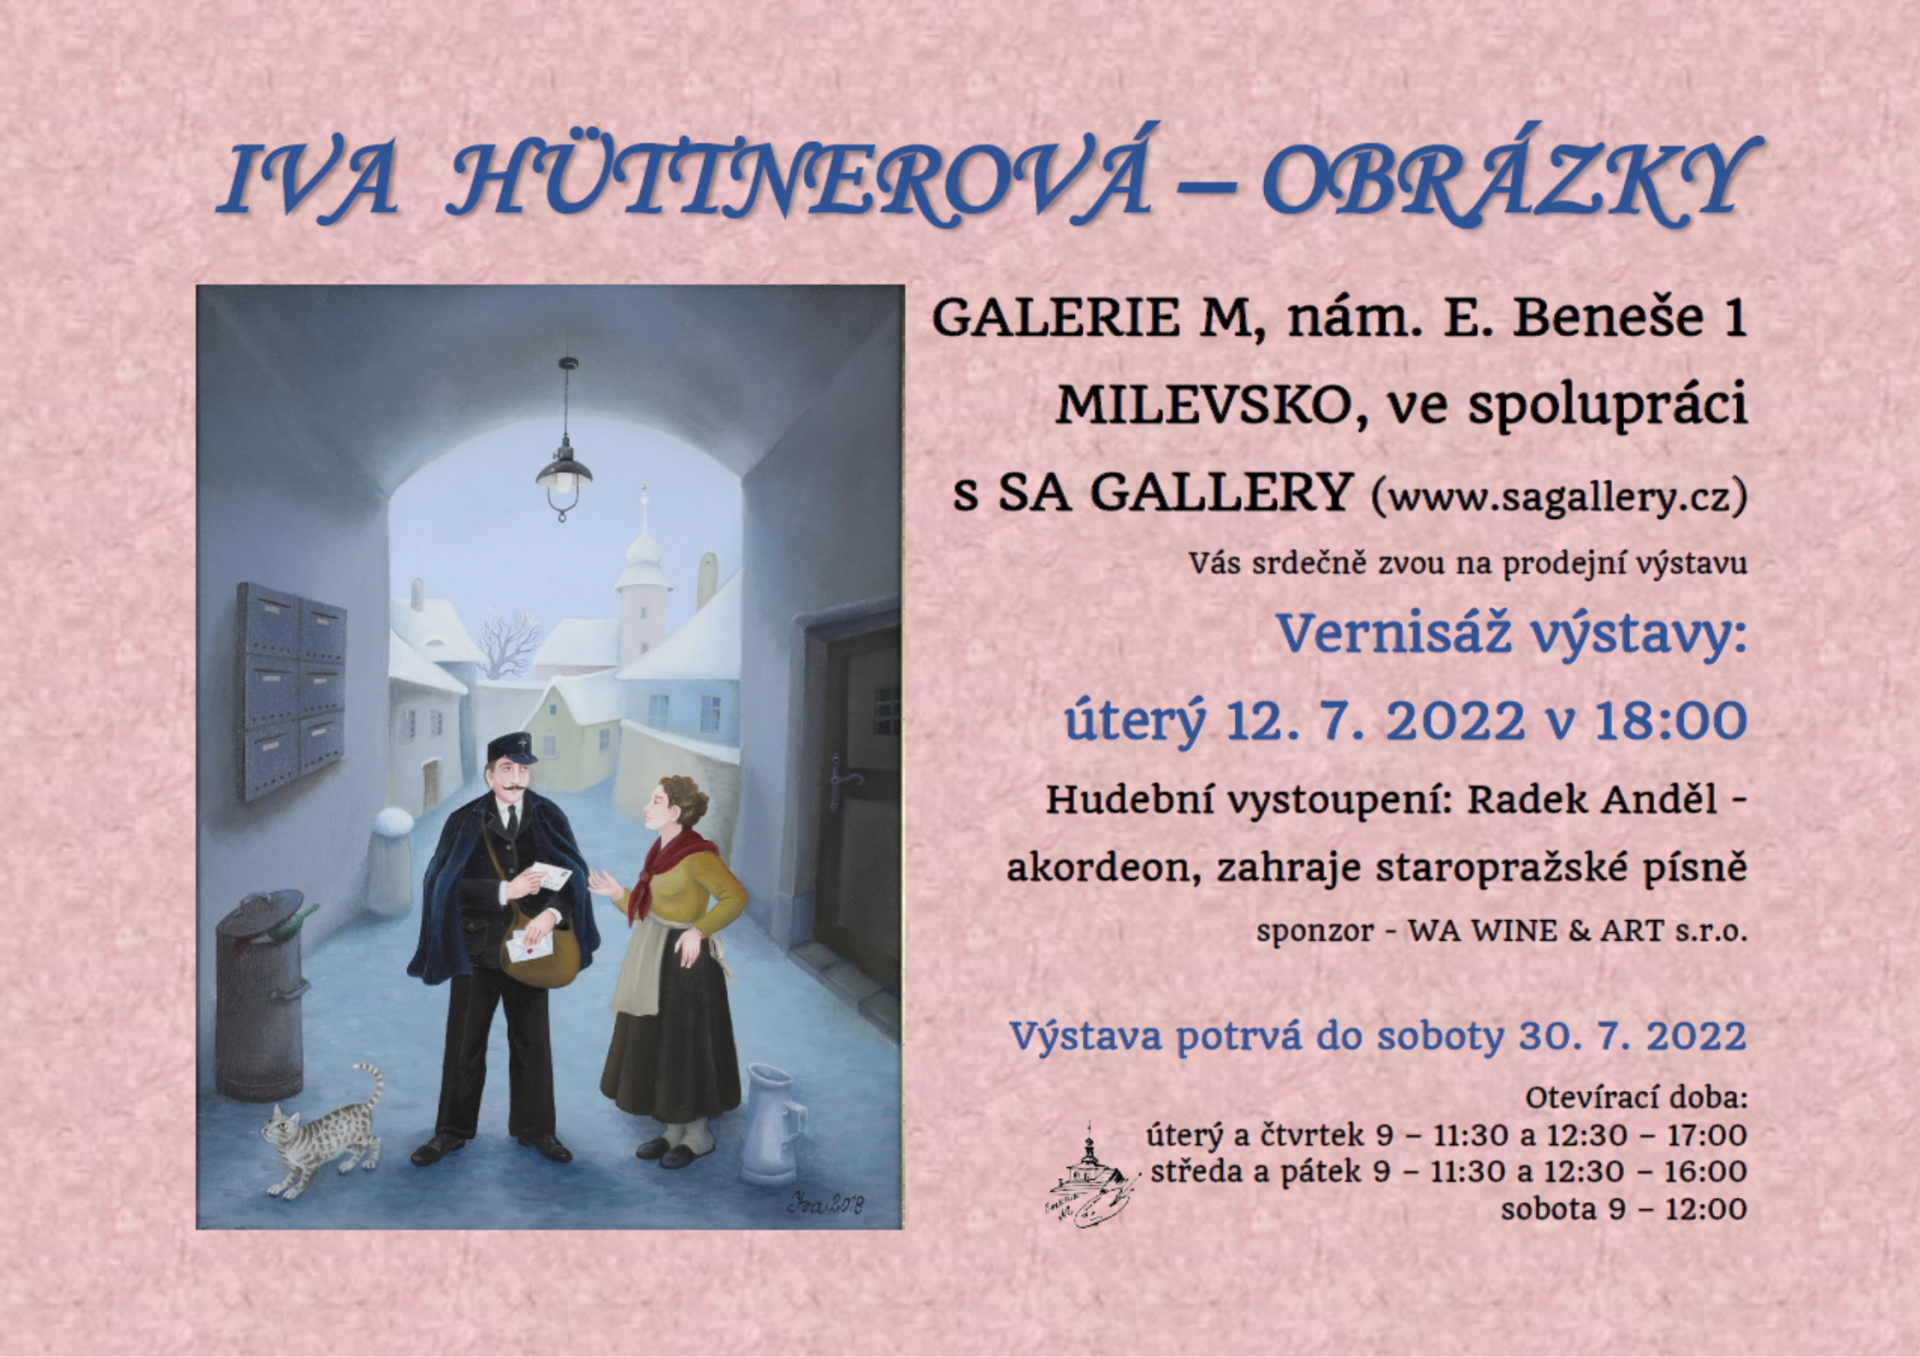 Plakát Vernisáž výstavy Iva Hüttnerová - obrázky